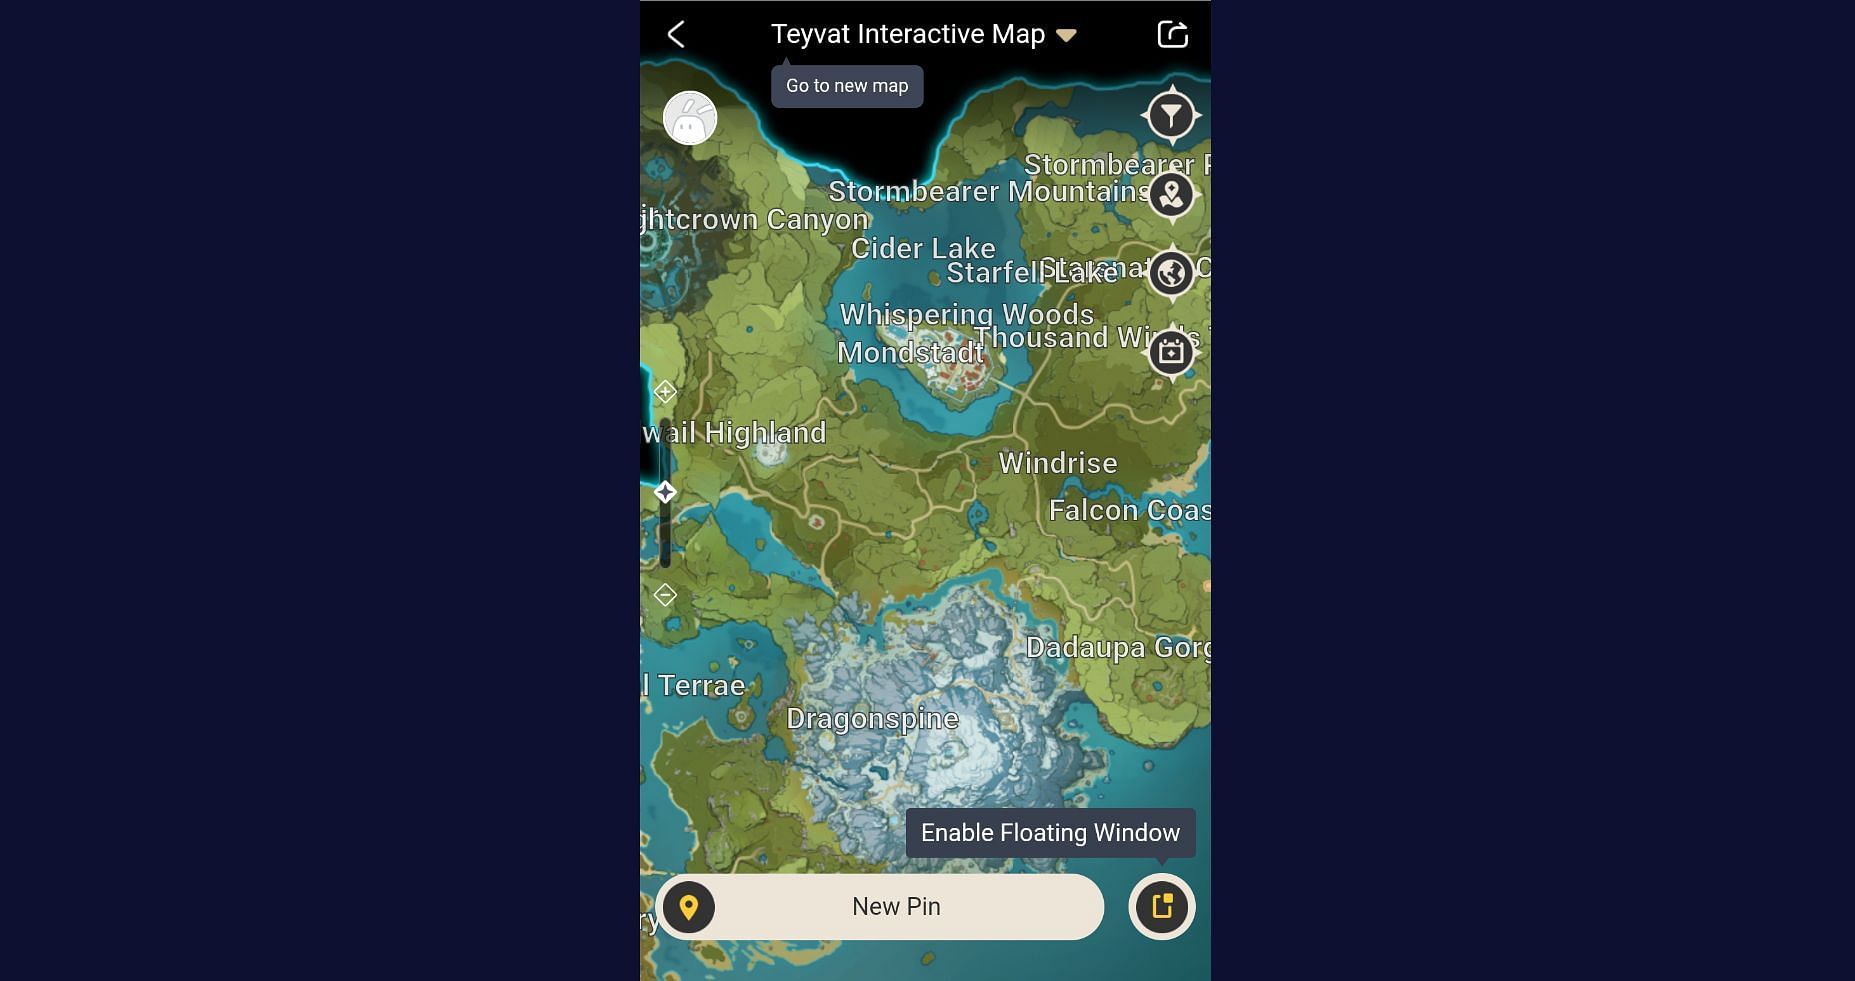 Teyvat Interactive Map on HoYoLAB application (Image via HoYoLAB)